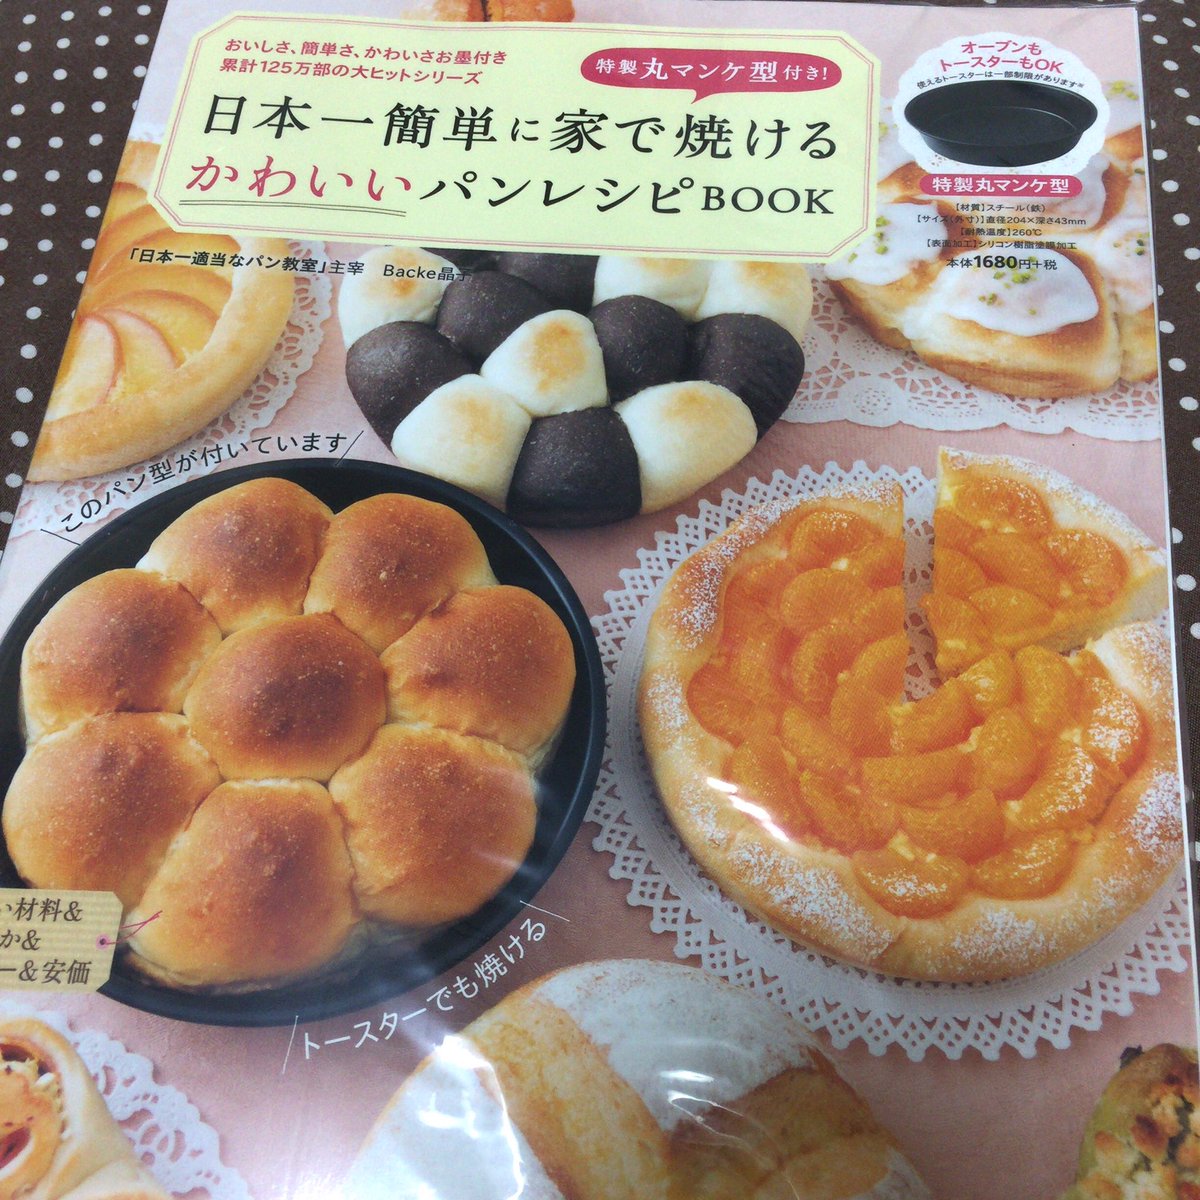 日本一簡単に家で焼けるかわいいパンレシピ